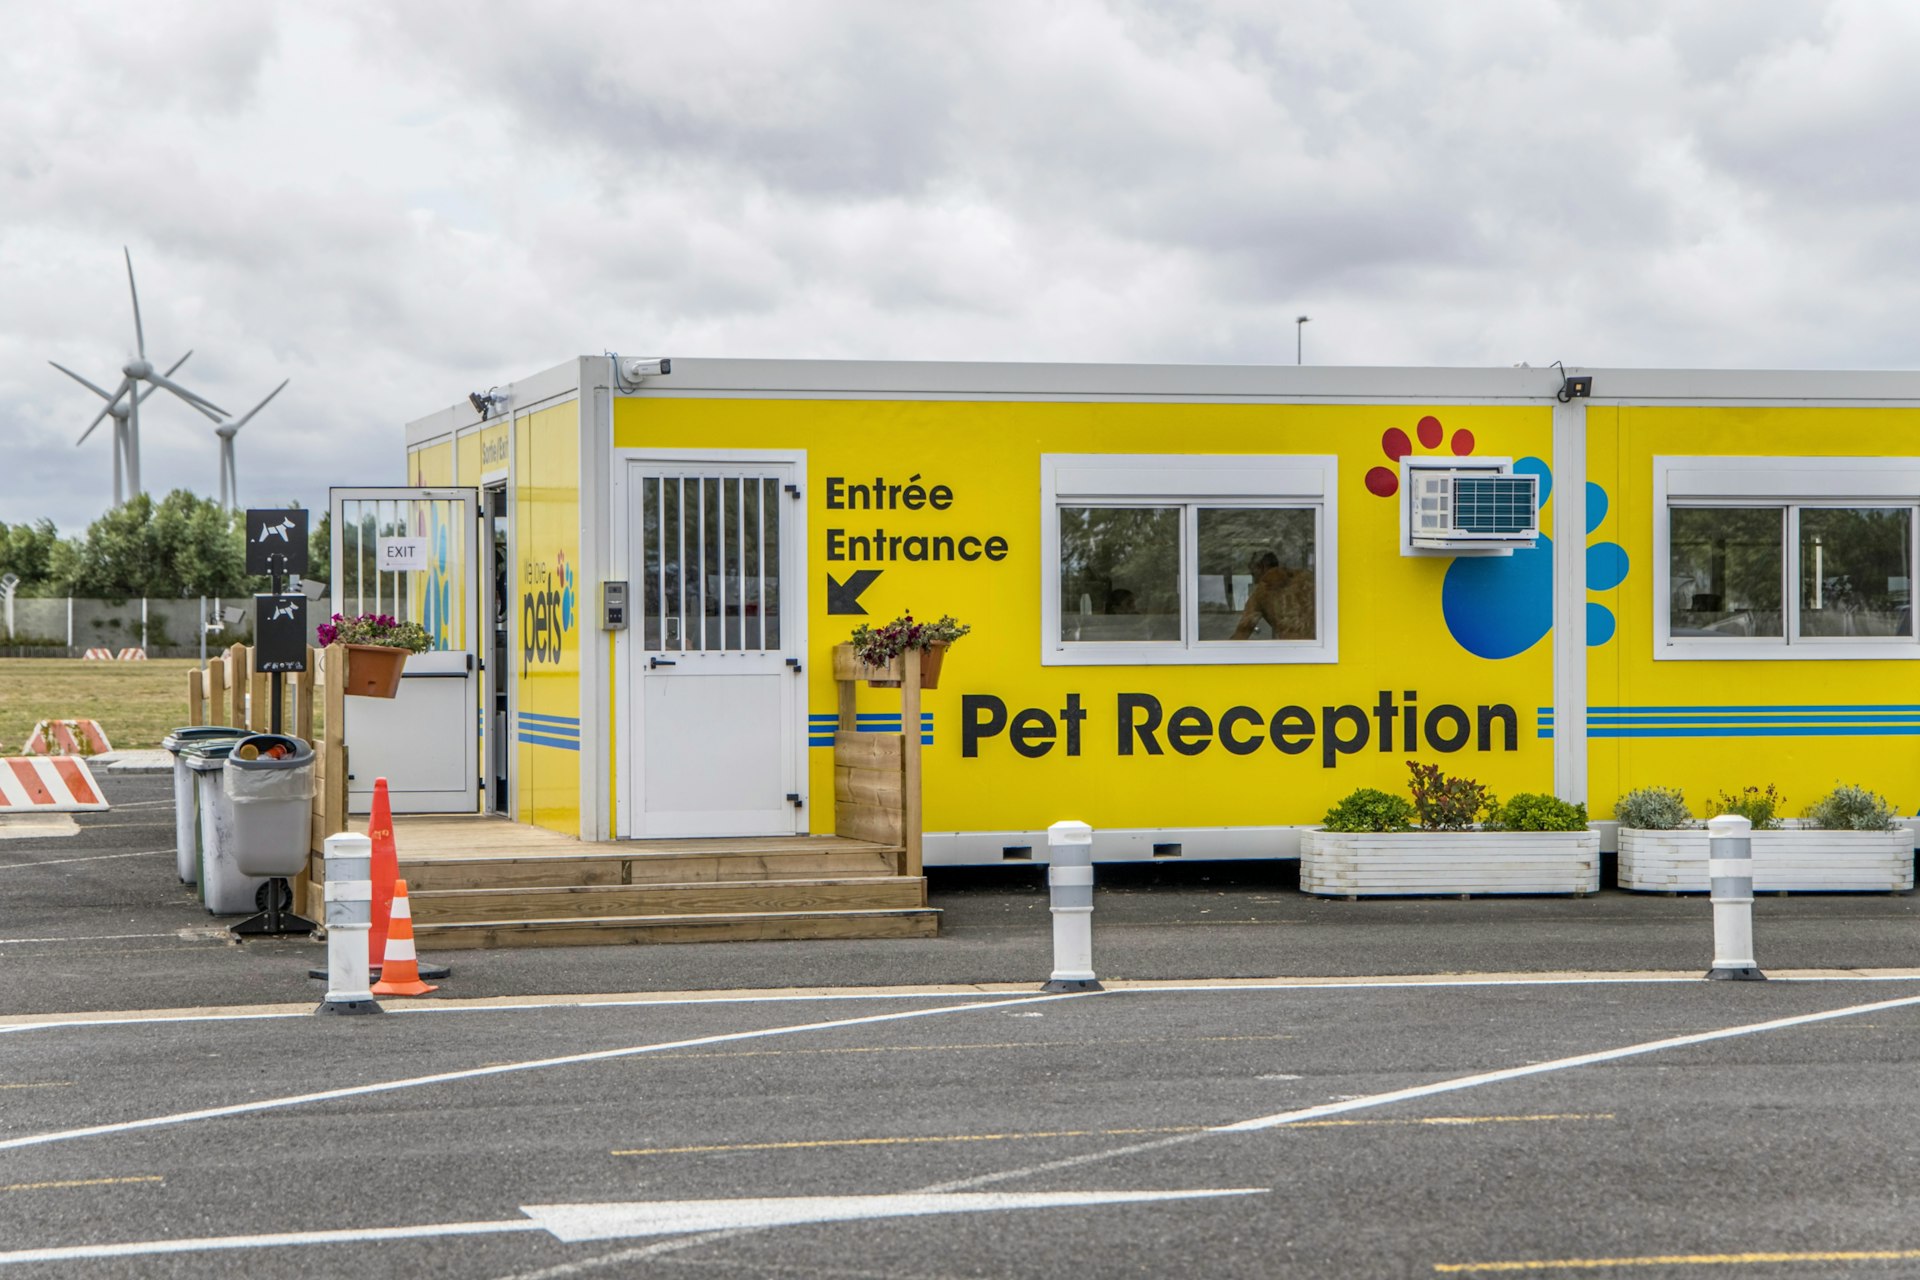 Um portacabin amarelo brilhante rotulado como "Recepção para animais de estimação", com alguns degraus que levam até a entrada